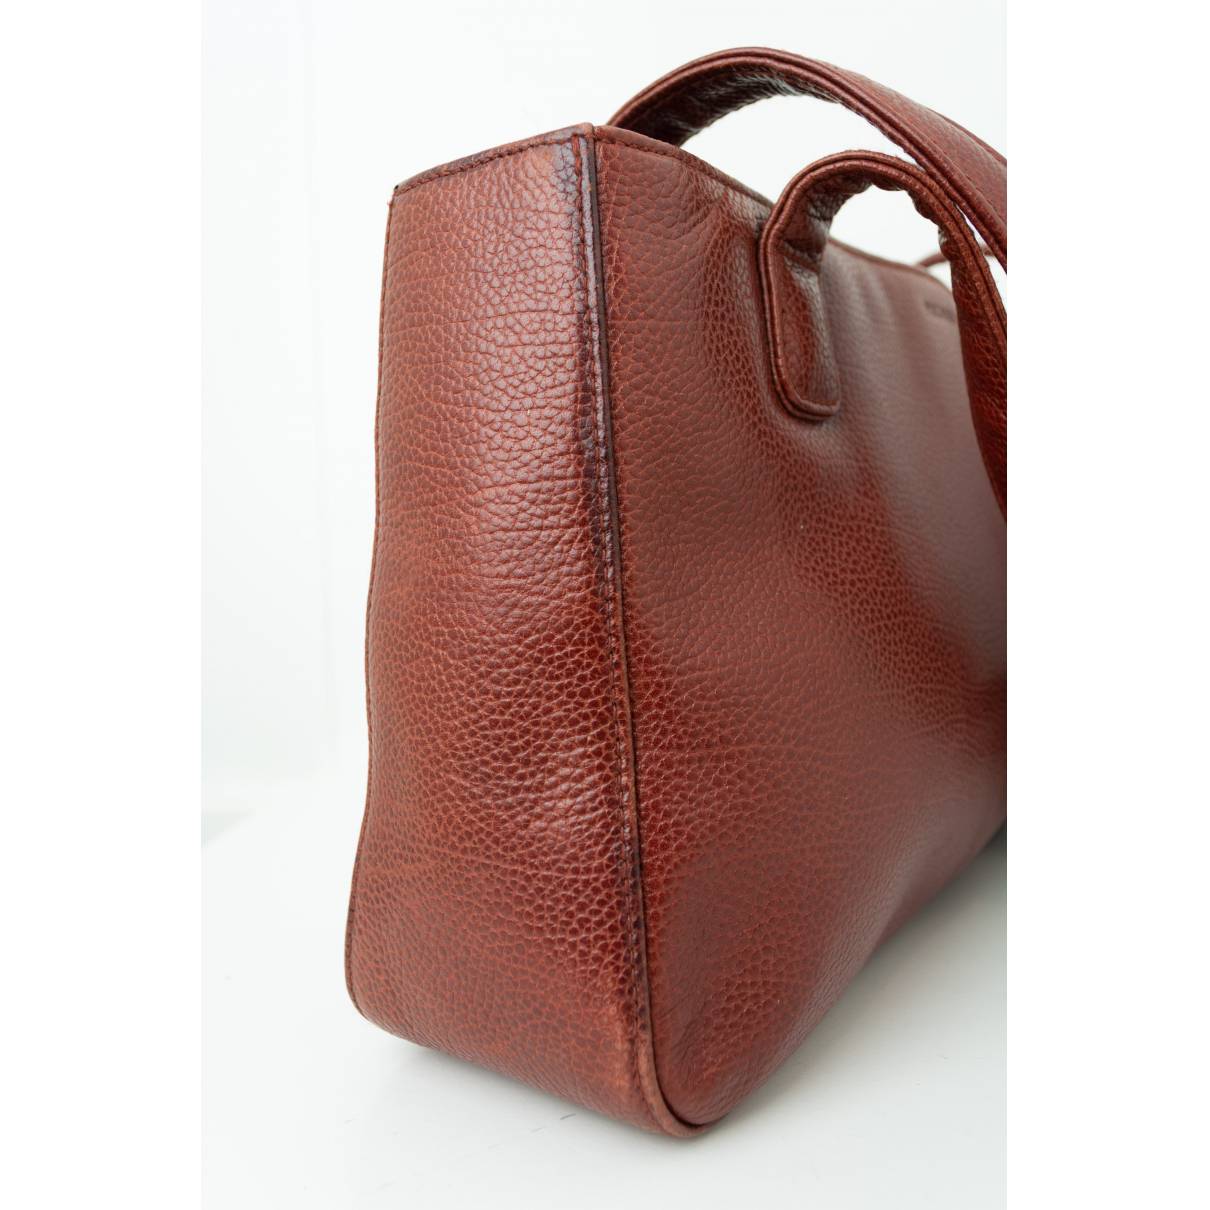 Vintage Red Leather Woman Shoulder Bag Picard Leather Bag 